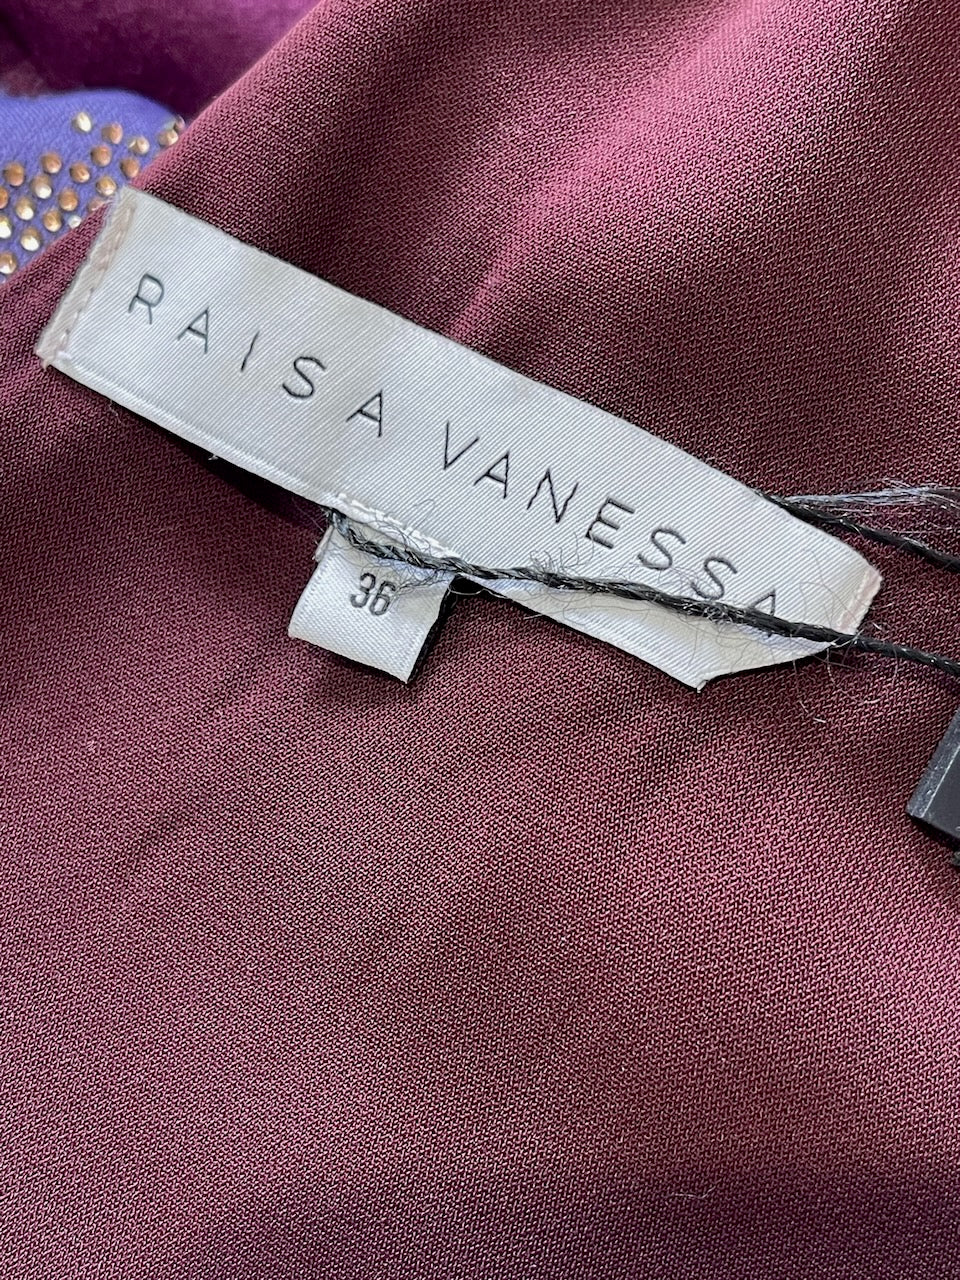 Robe Raisa Vanessa violette T.36 NEUVE